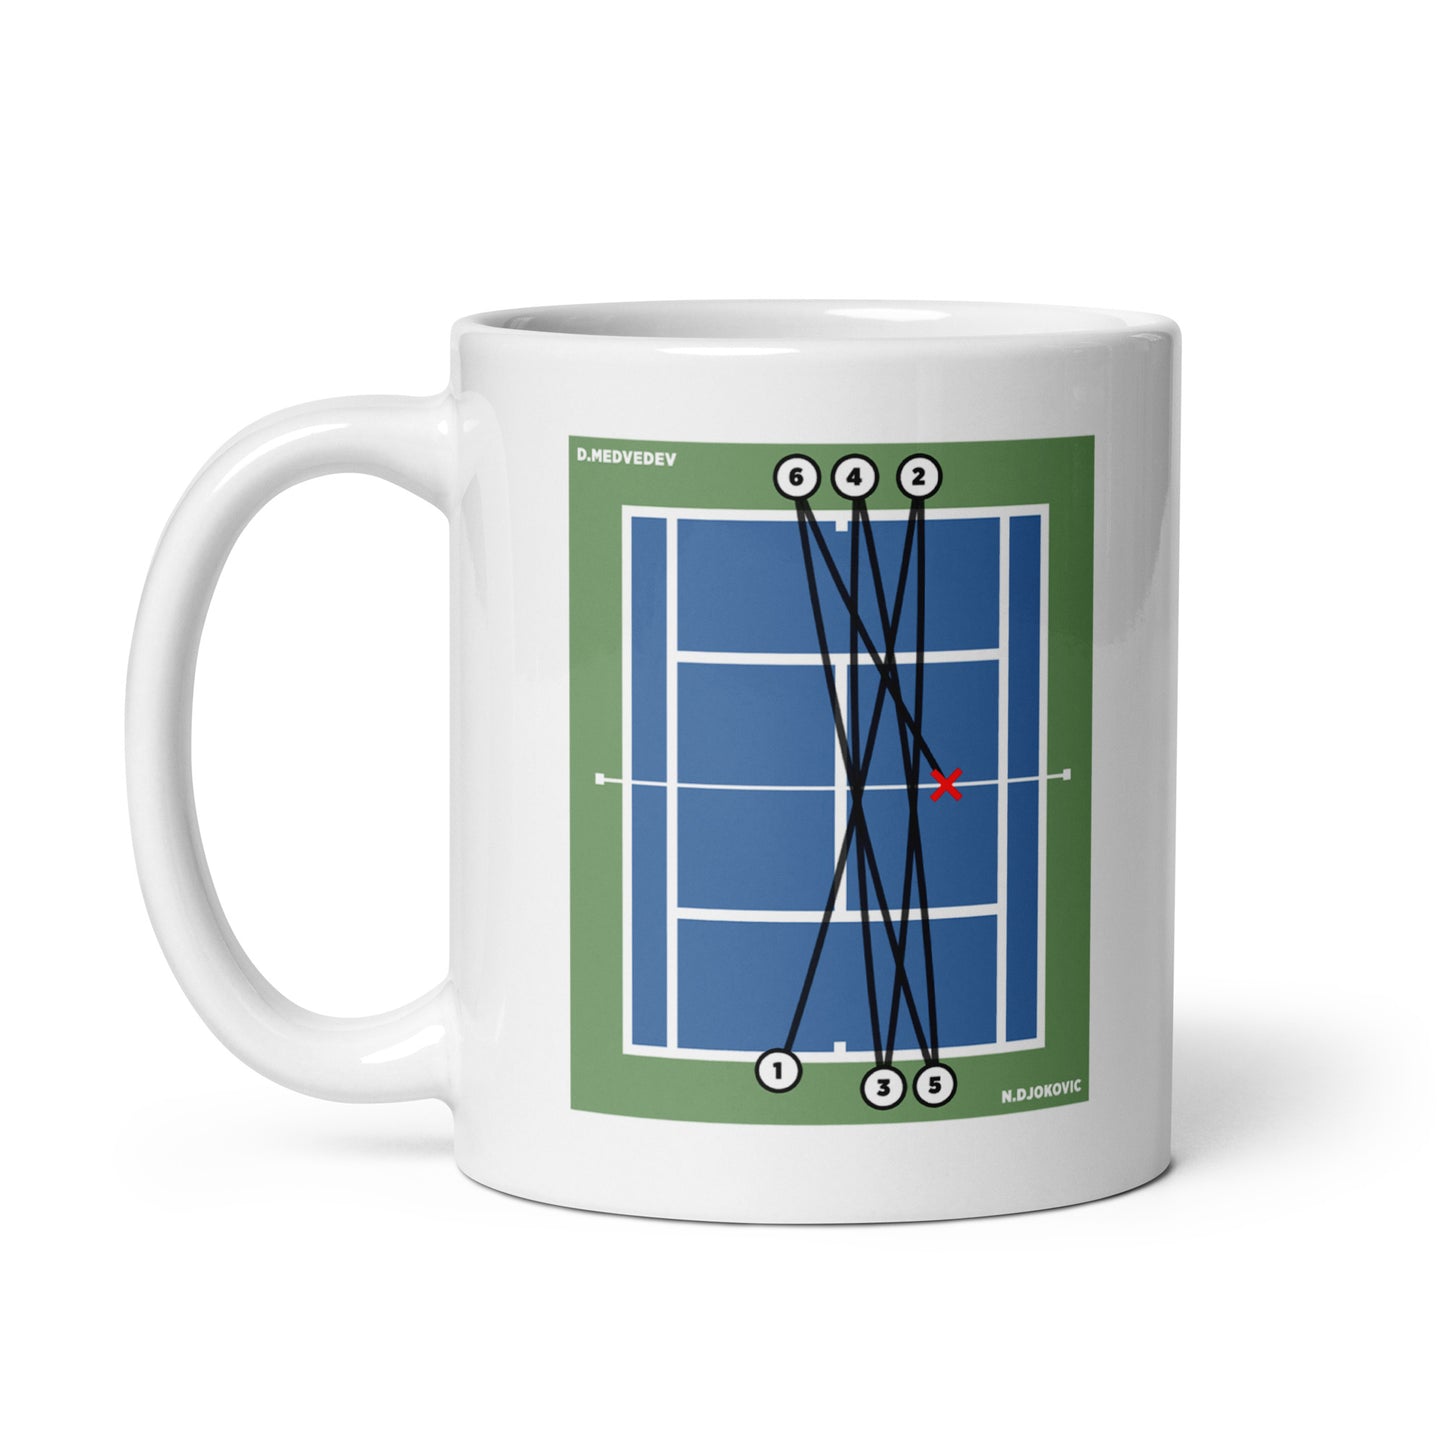 Novak Djokovic vs Daniil Medvedev - US Open 2023 Final Mug